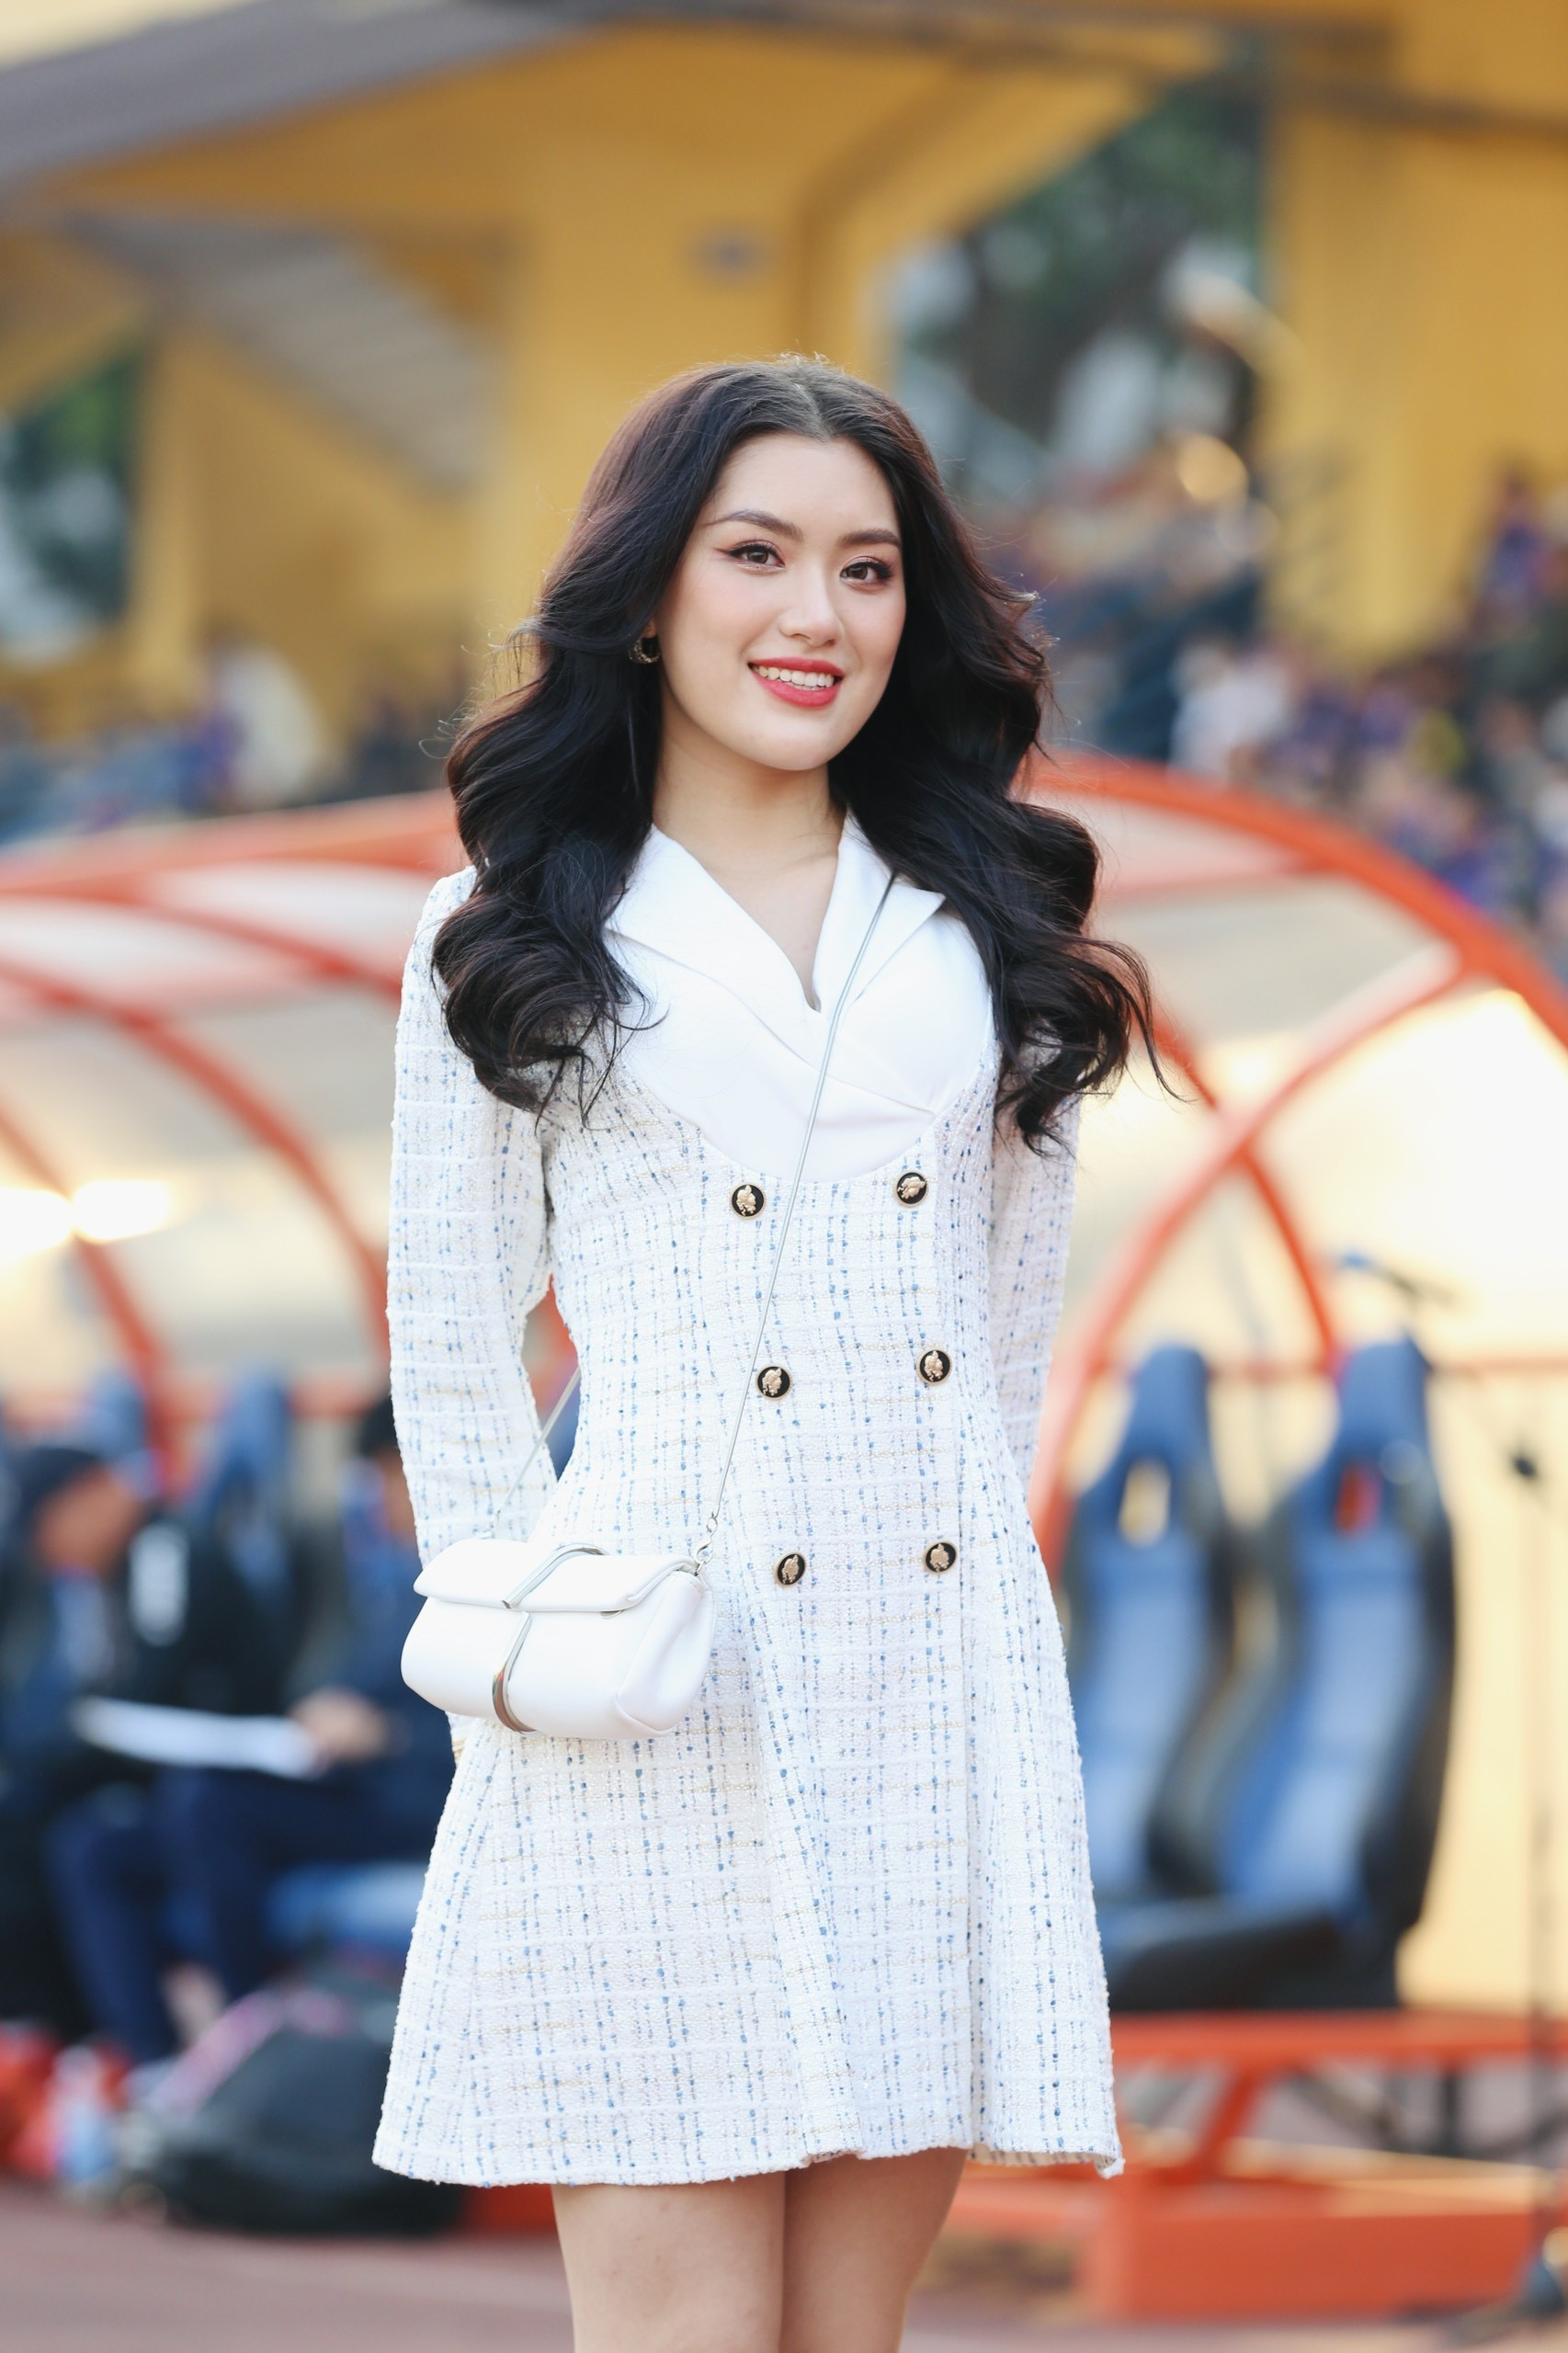 Hoa hậu Đỗ Mỹ Linh đến sân Hàng Đẫy cổ vũ đội bóng của ông xã tranh Siêu cúp ảnh 17